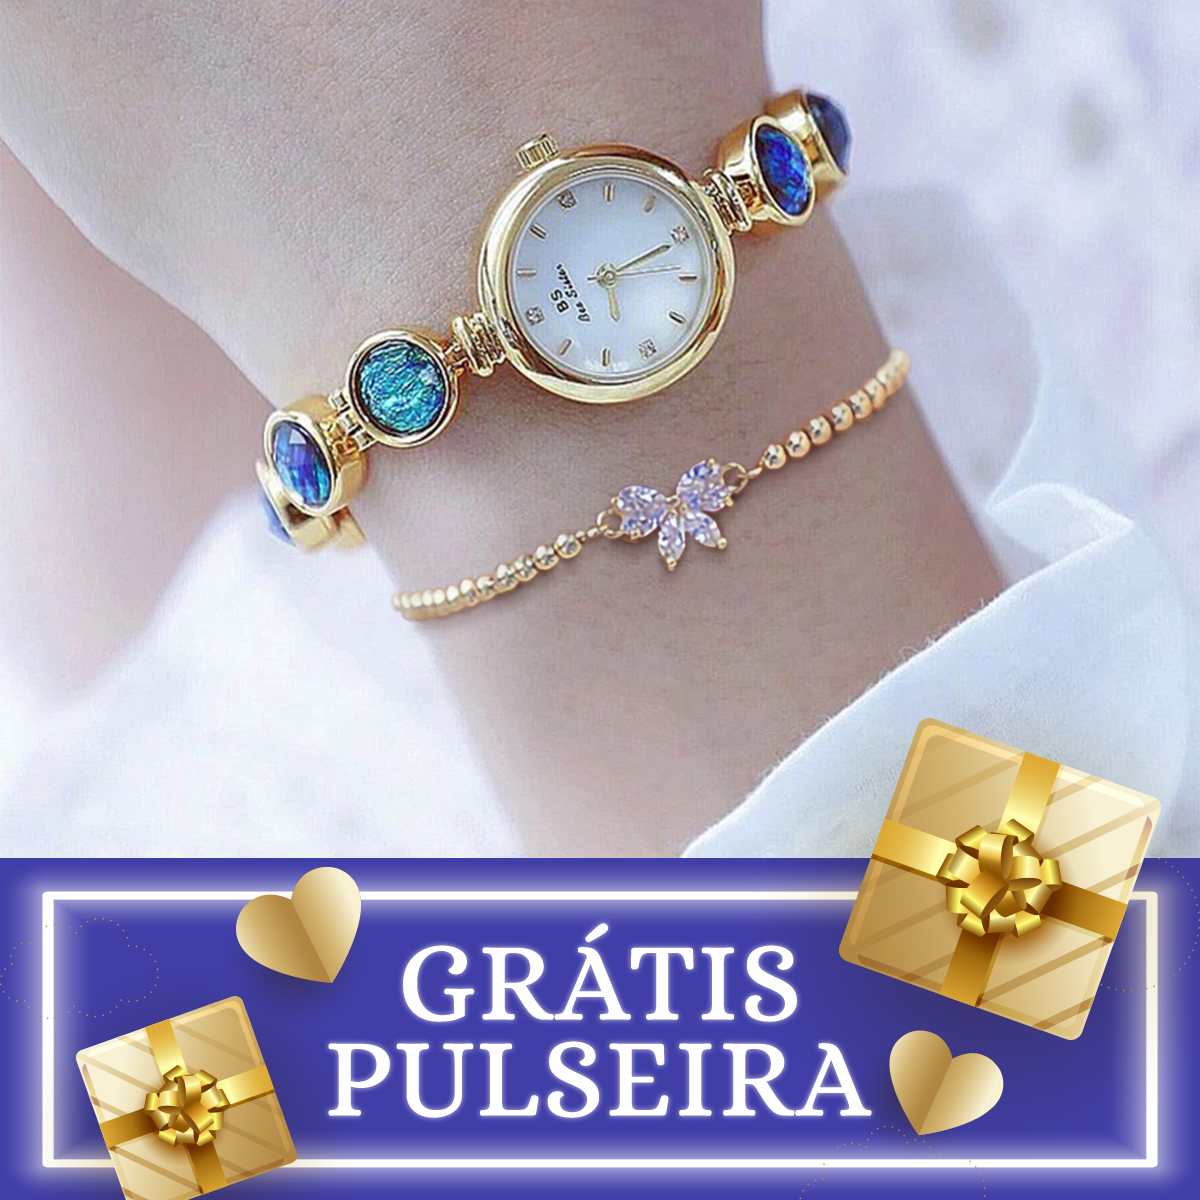 Relógio com Pulseira de Presente, Grátis Pulseira, Kit Relógio e Pulseira para Presente, Presente de Natal